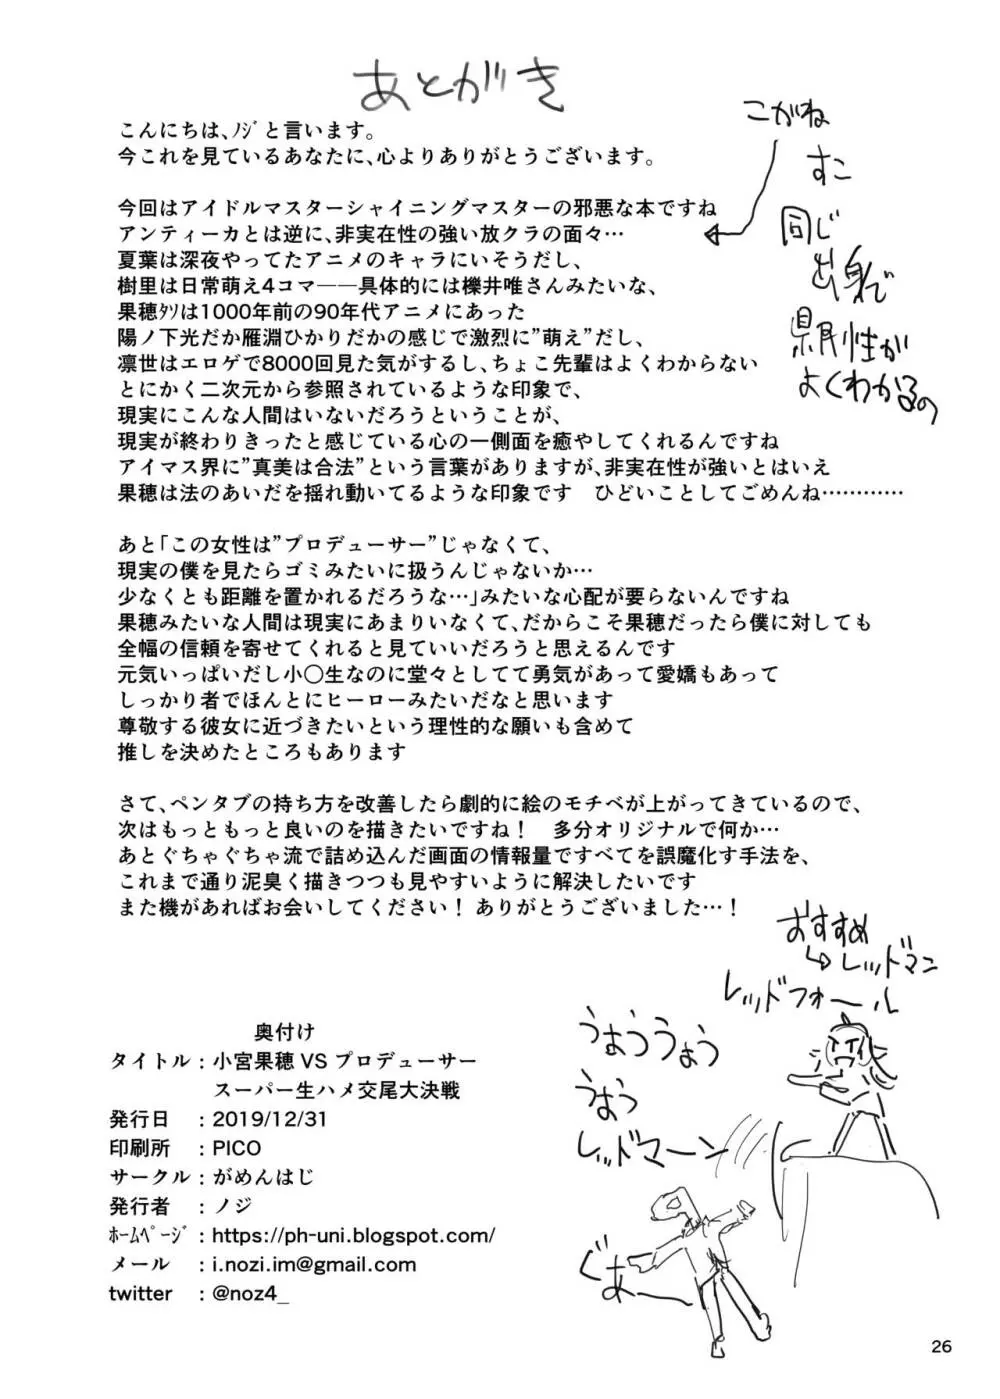 小宮果穂 VS プロデューサー スーパー生ハメ交尾大決戦 26ページ